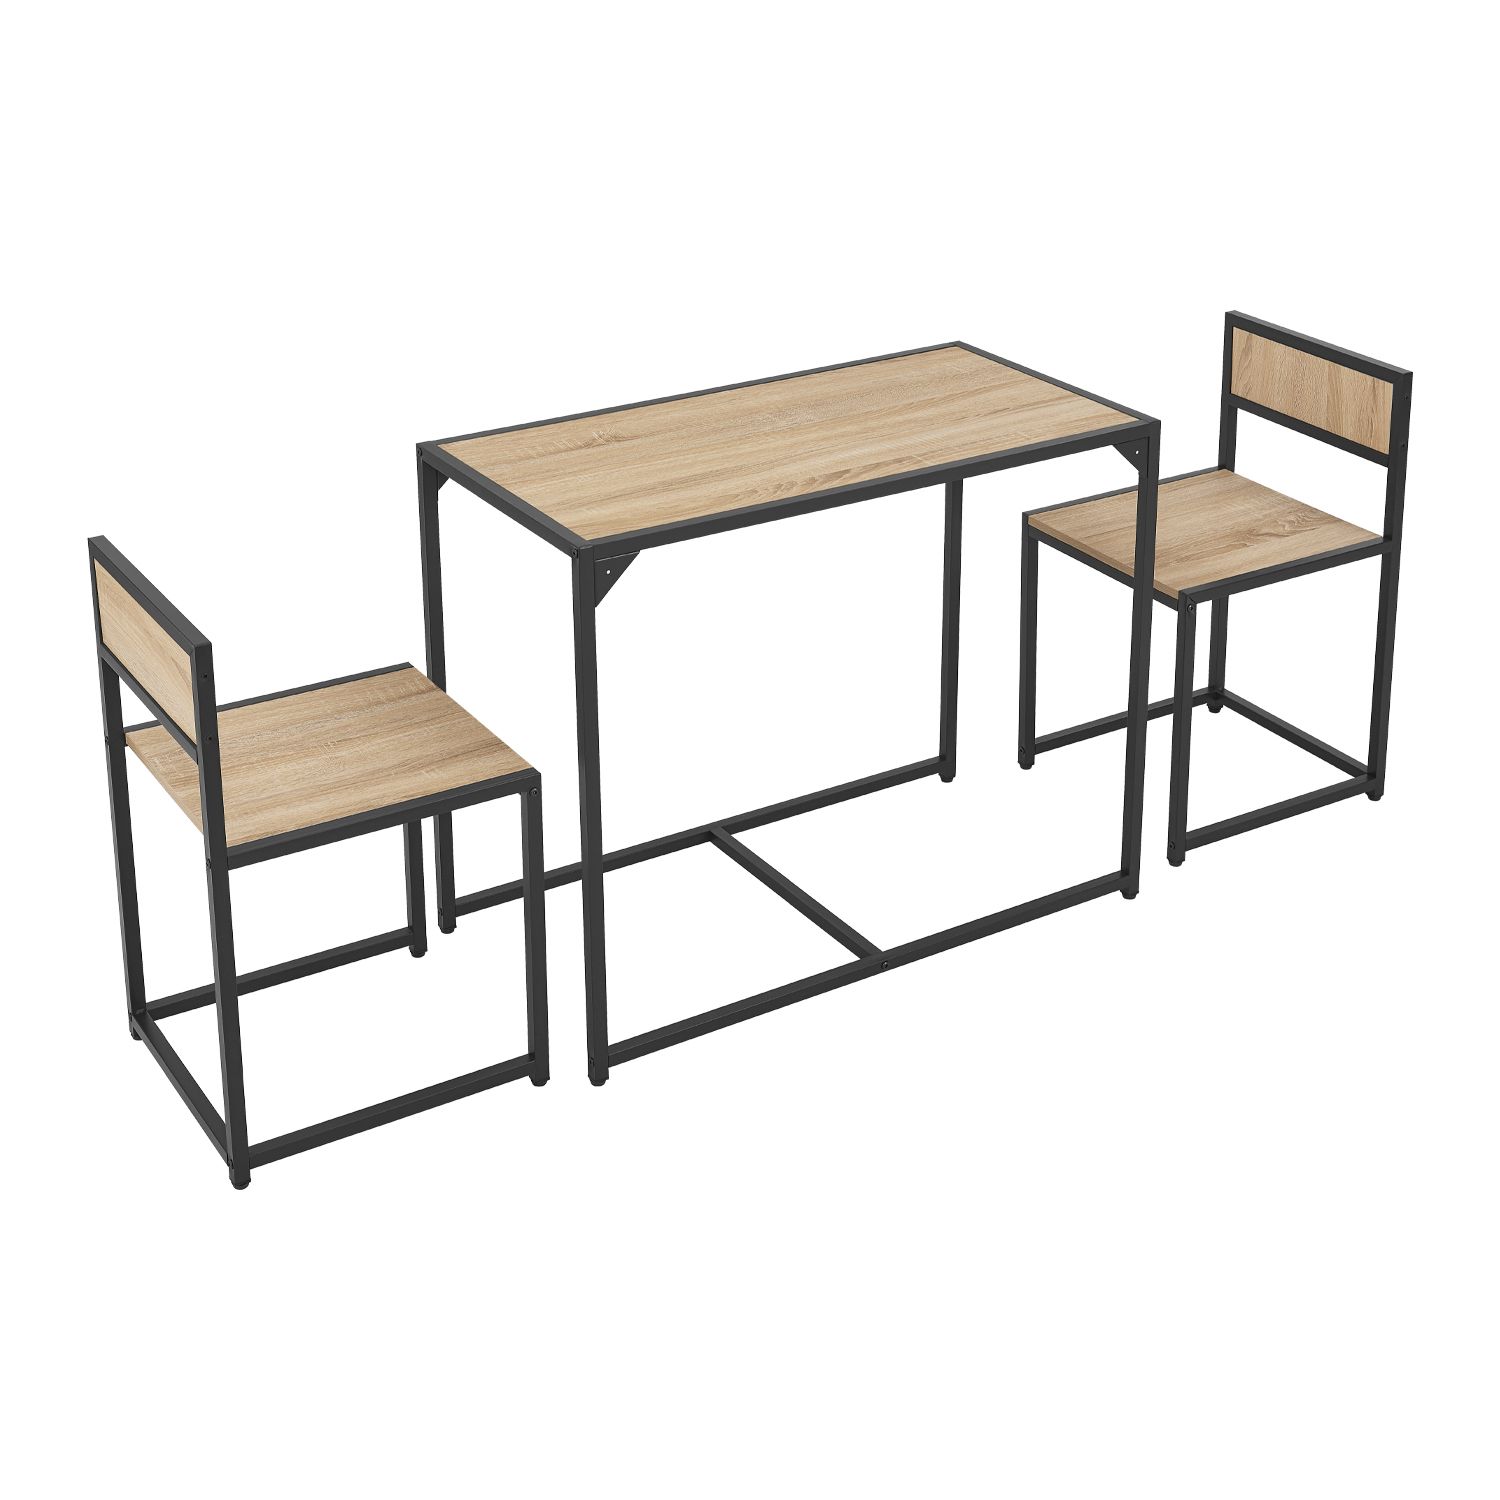 Juskys Súprava kuchynského stola so stolom a 2 stoličkami - sivý vzhľad dreva